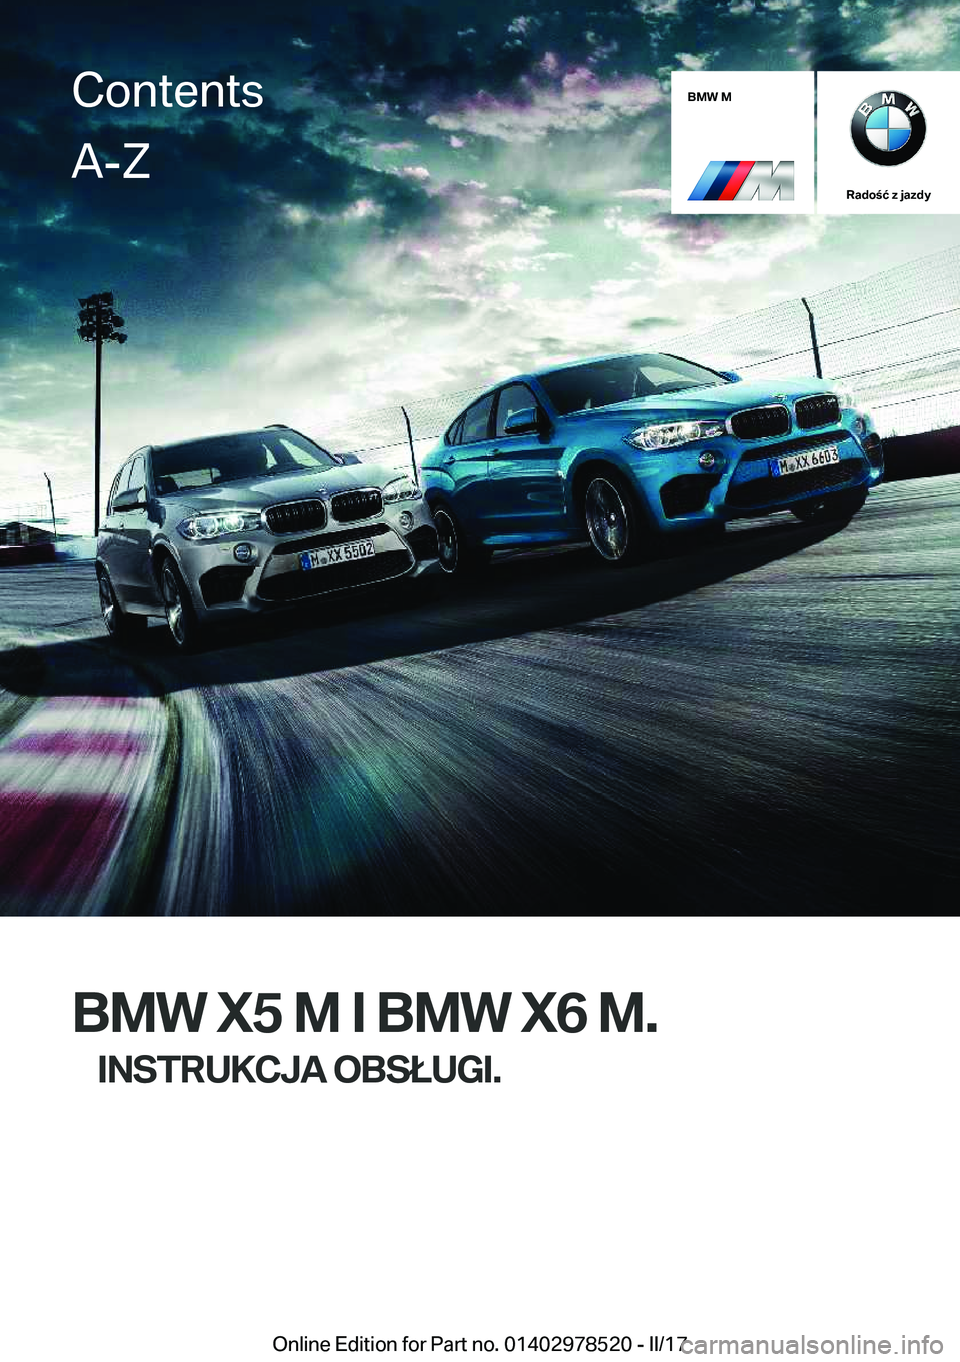 BMW X6 M 2017  Instrukcja obsługi (in Polish) �B�M�W��M
�R�a�d�o�